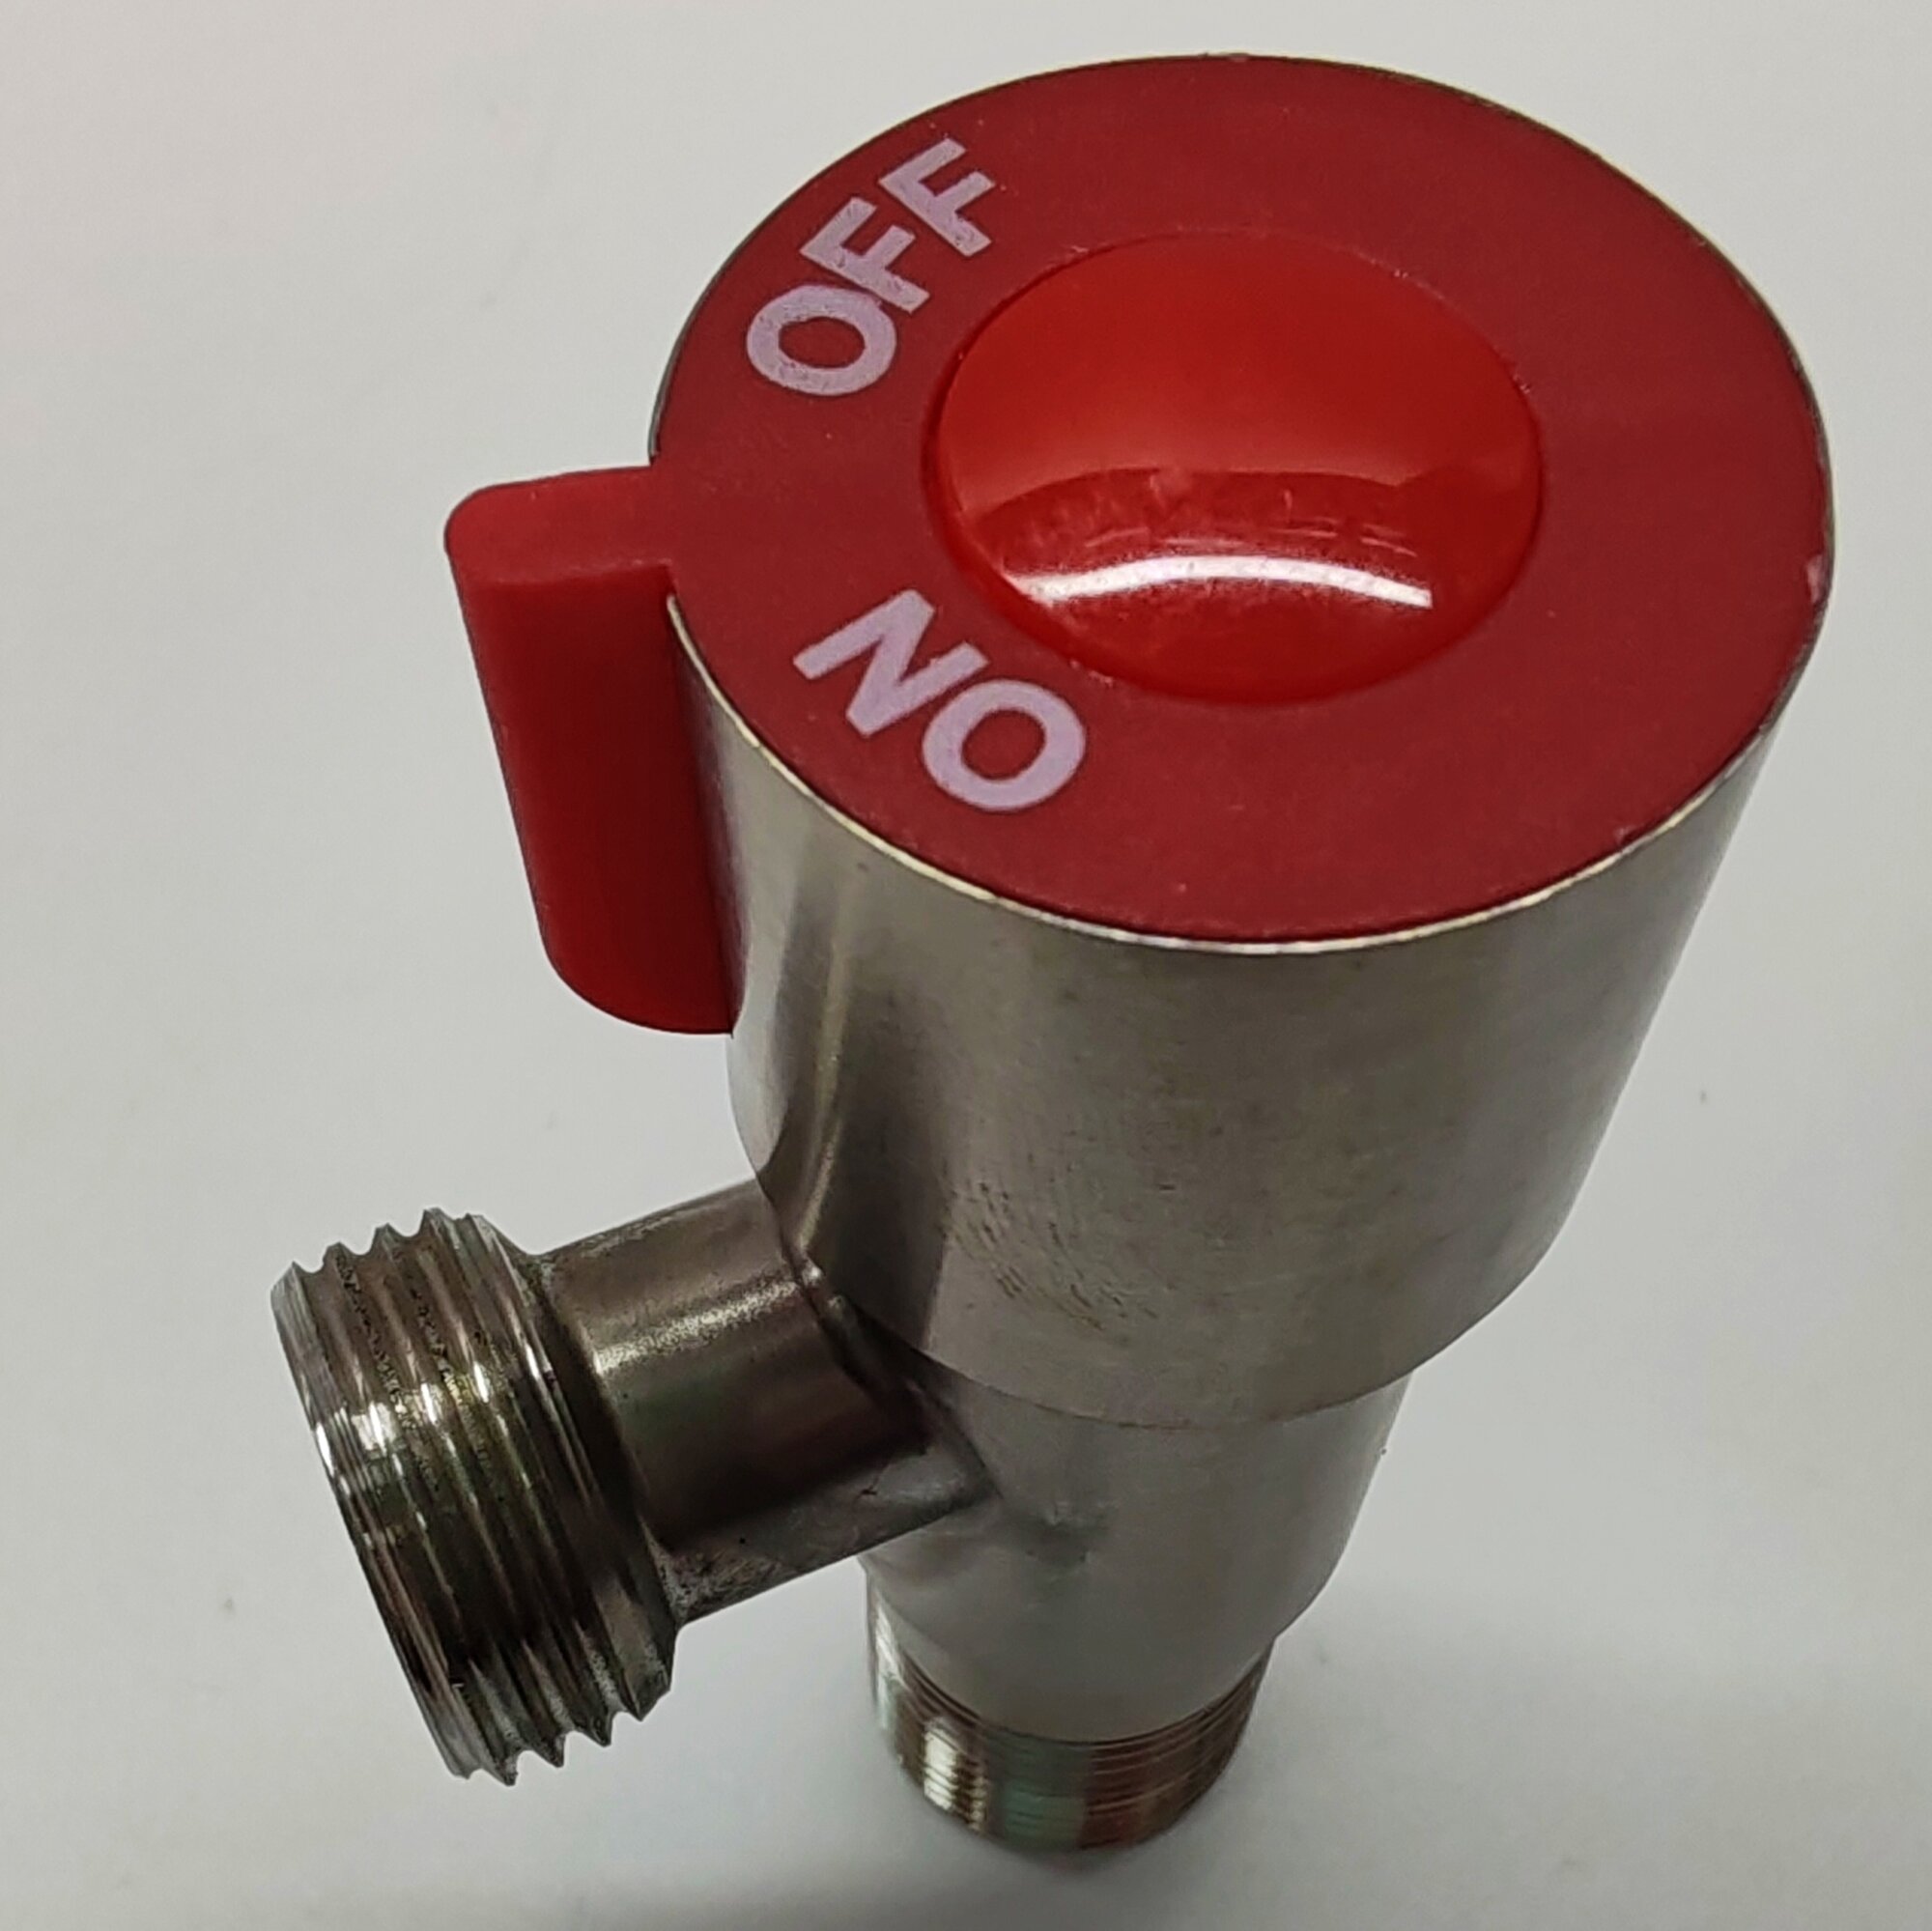 Кран вентильный угловой из нержавеющей стали для подключения сантехнических приборов (Нар/Нар) - 1/2" х 1/2" (красный). Fashun A54897H